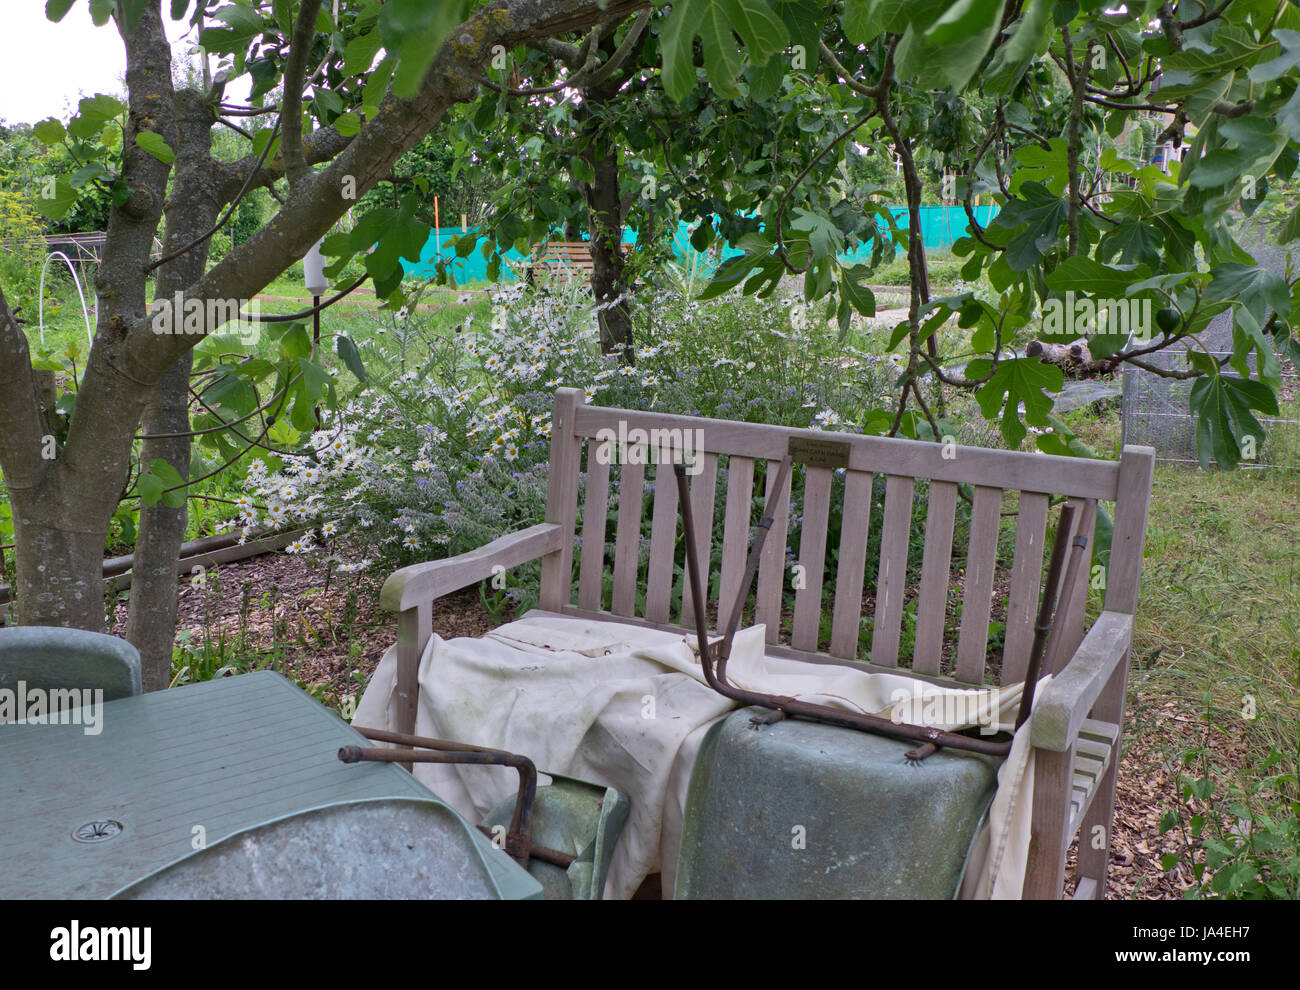 Jardín habilitaciones político usado por Jeremy Corbyn MP en East Finchley, Londres, Inglaterra, Reino Unido Foto de stock